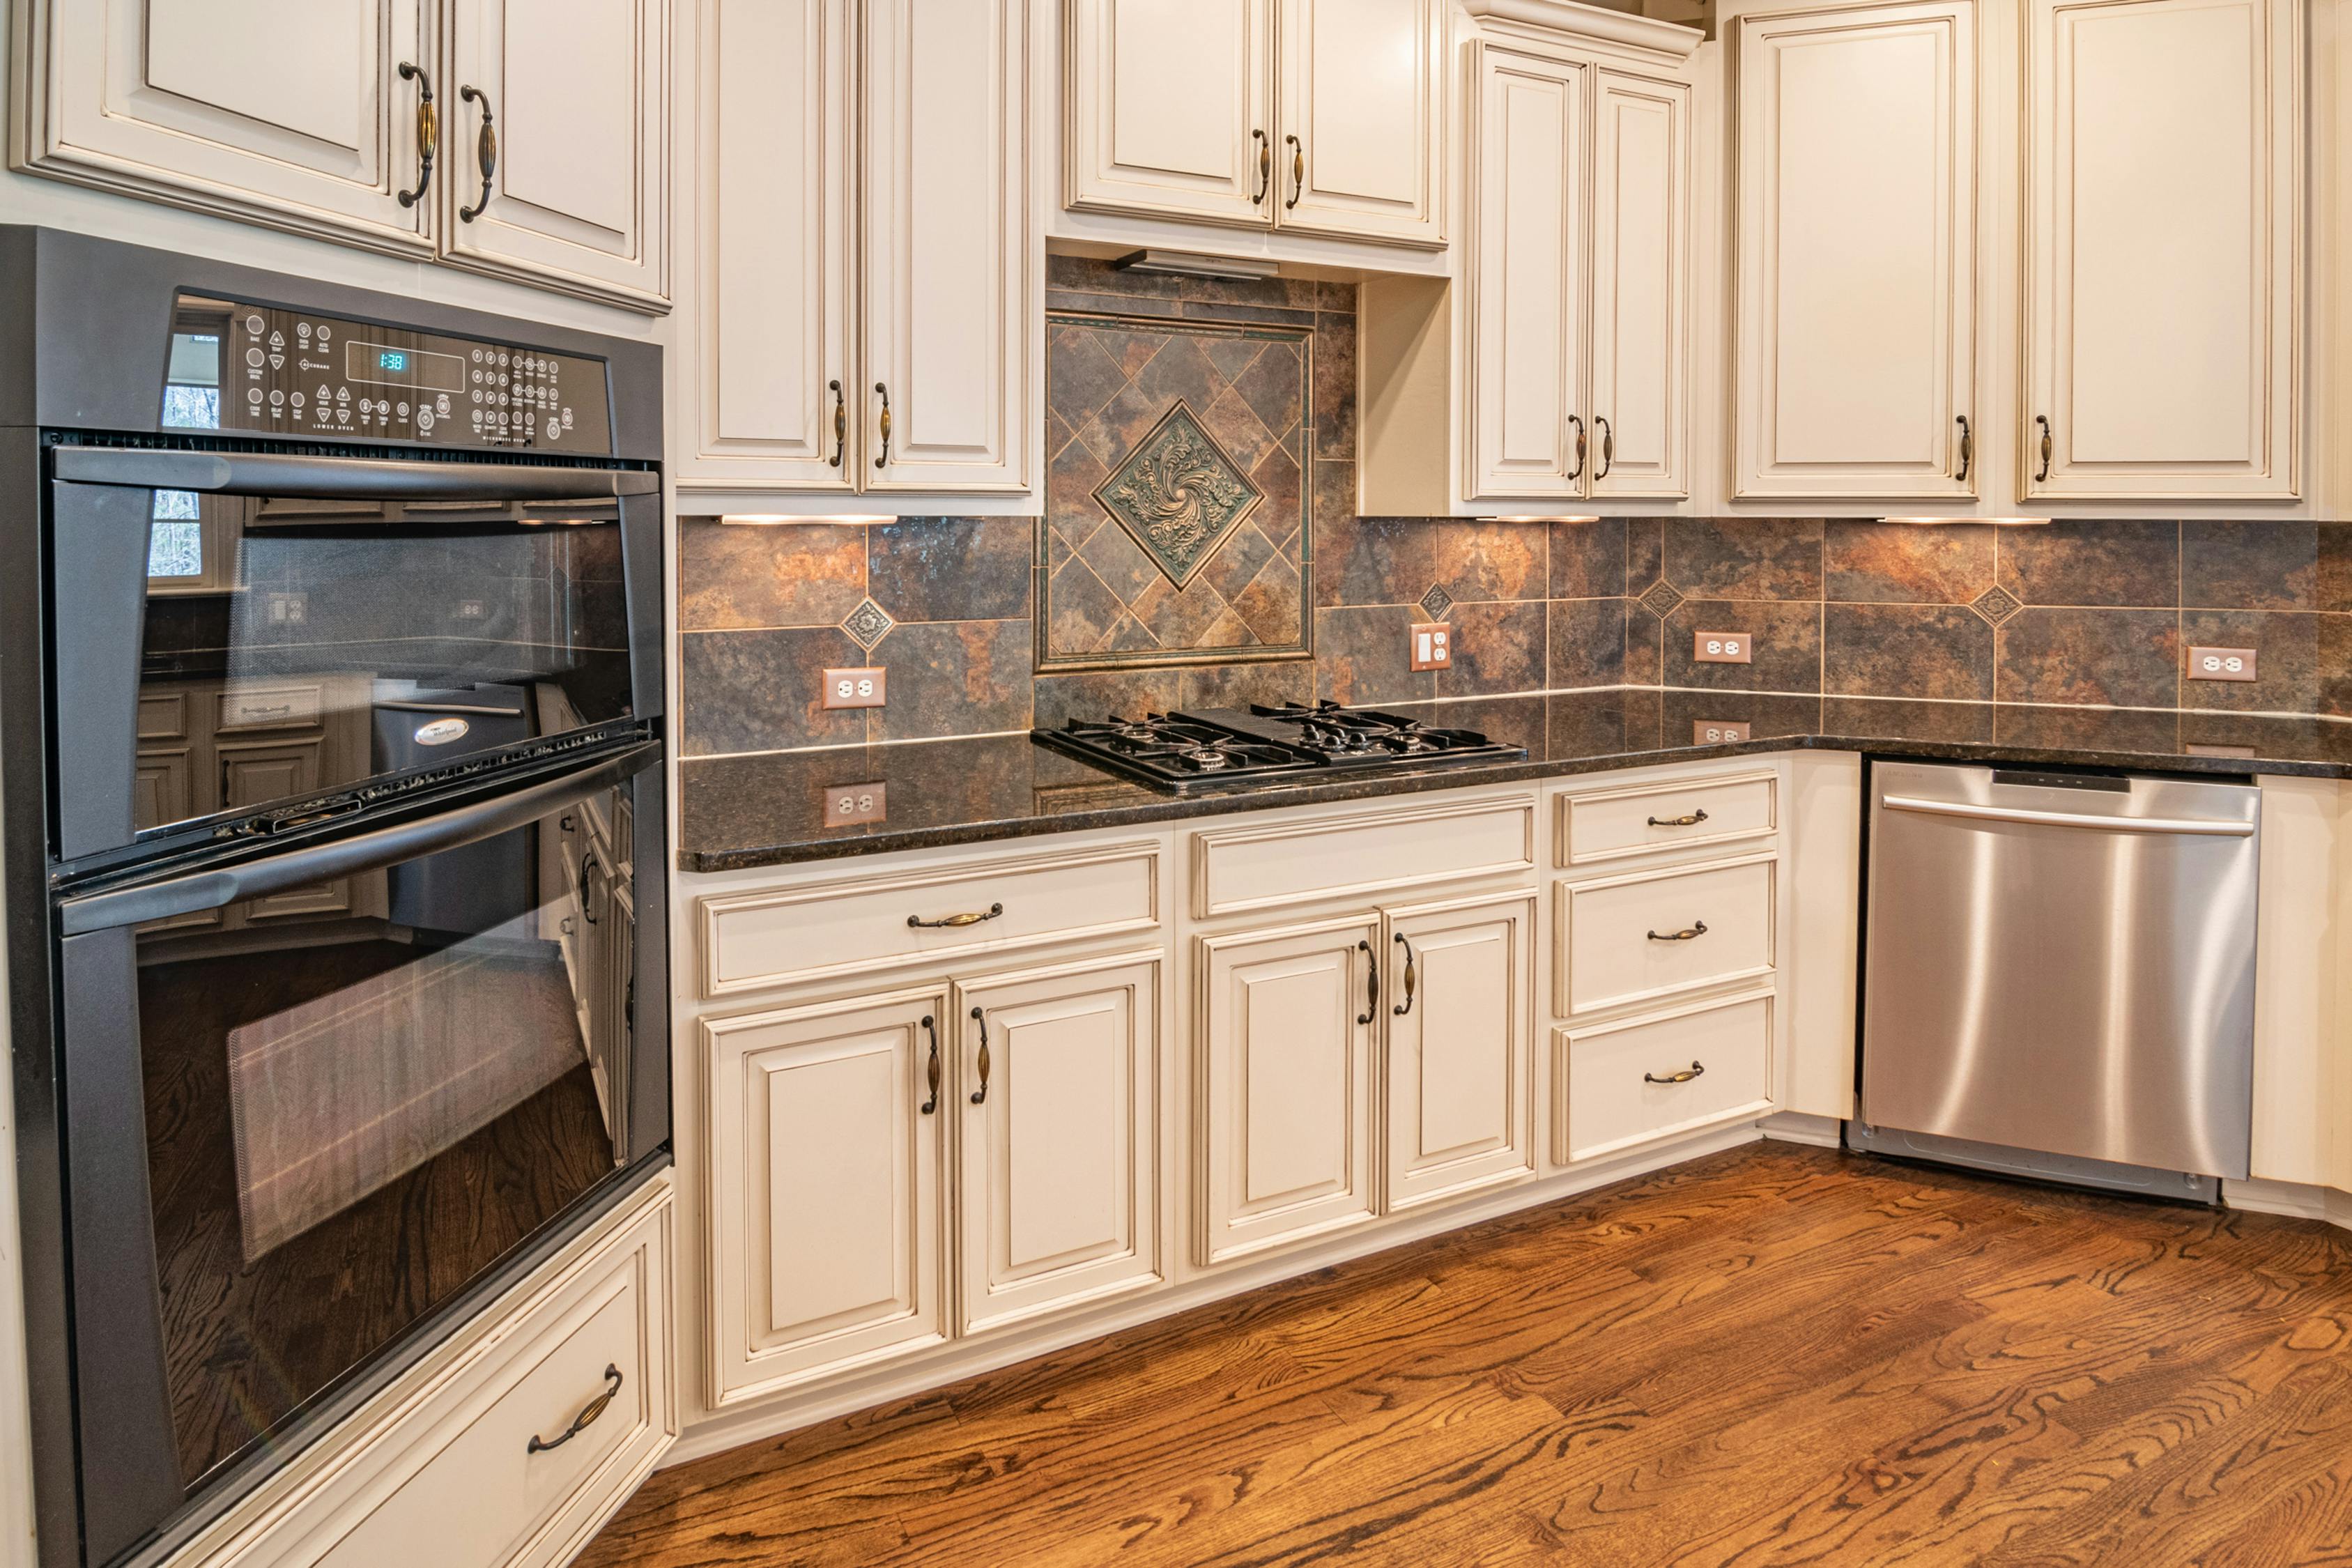 kitchen cabinet with wheat stalk design